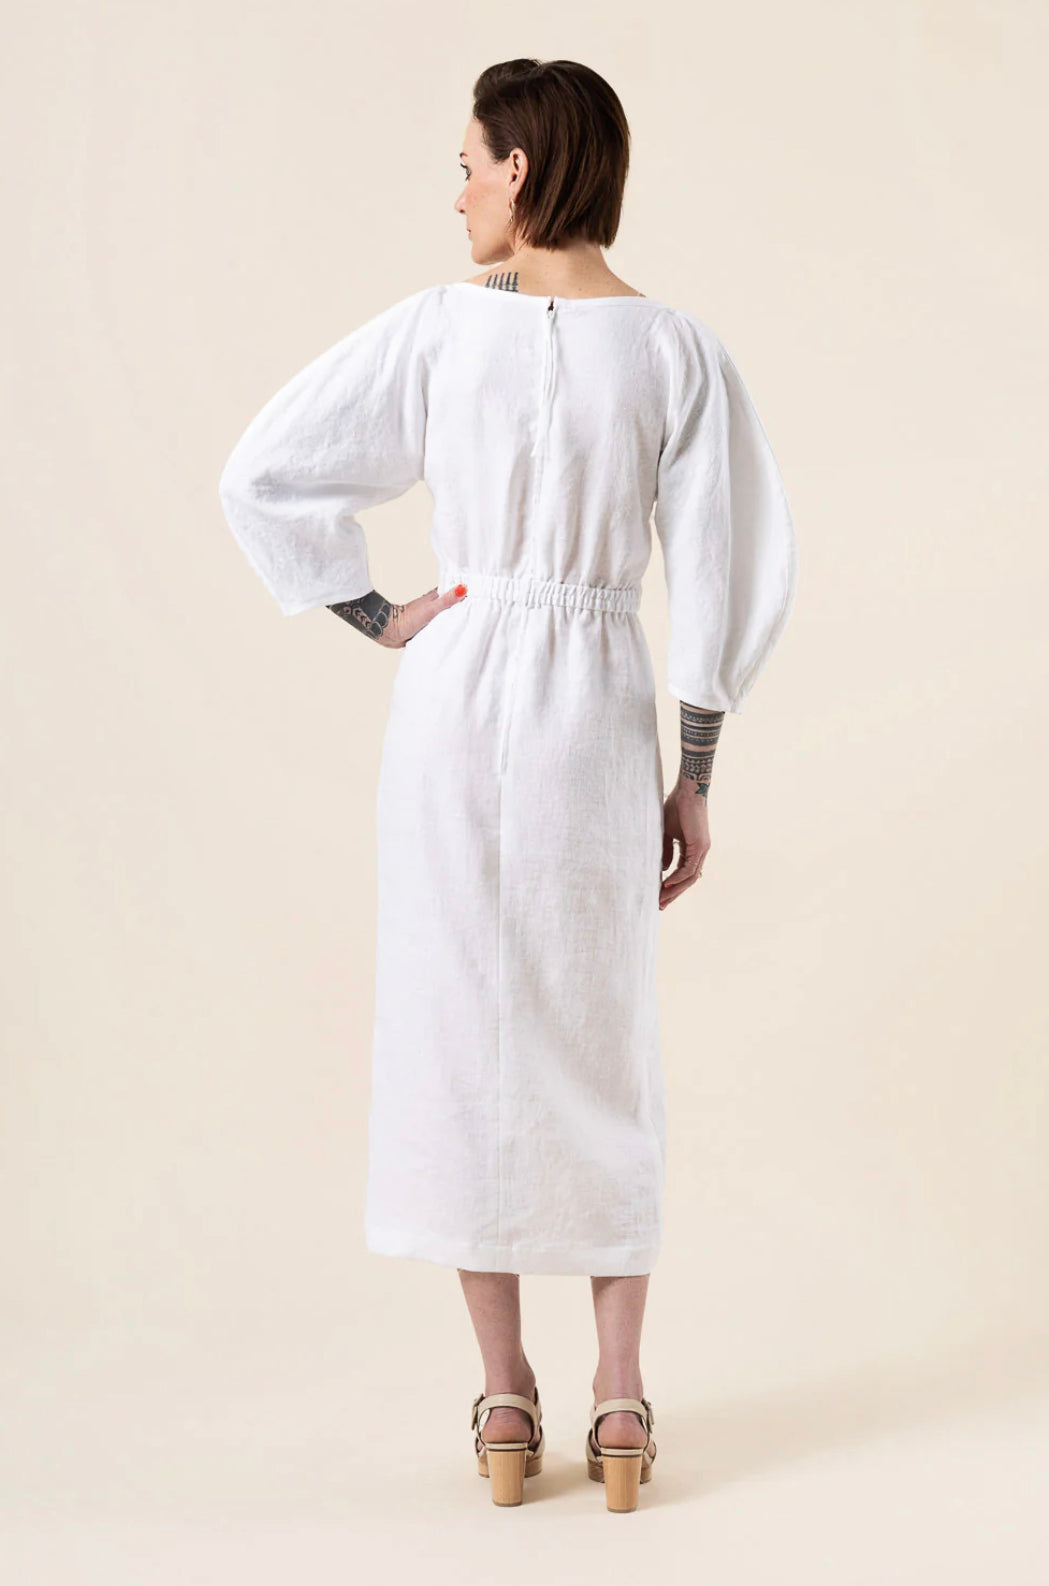 Closet Core - Jo Dress and Jumpsuit Sewing Pattern